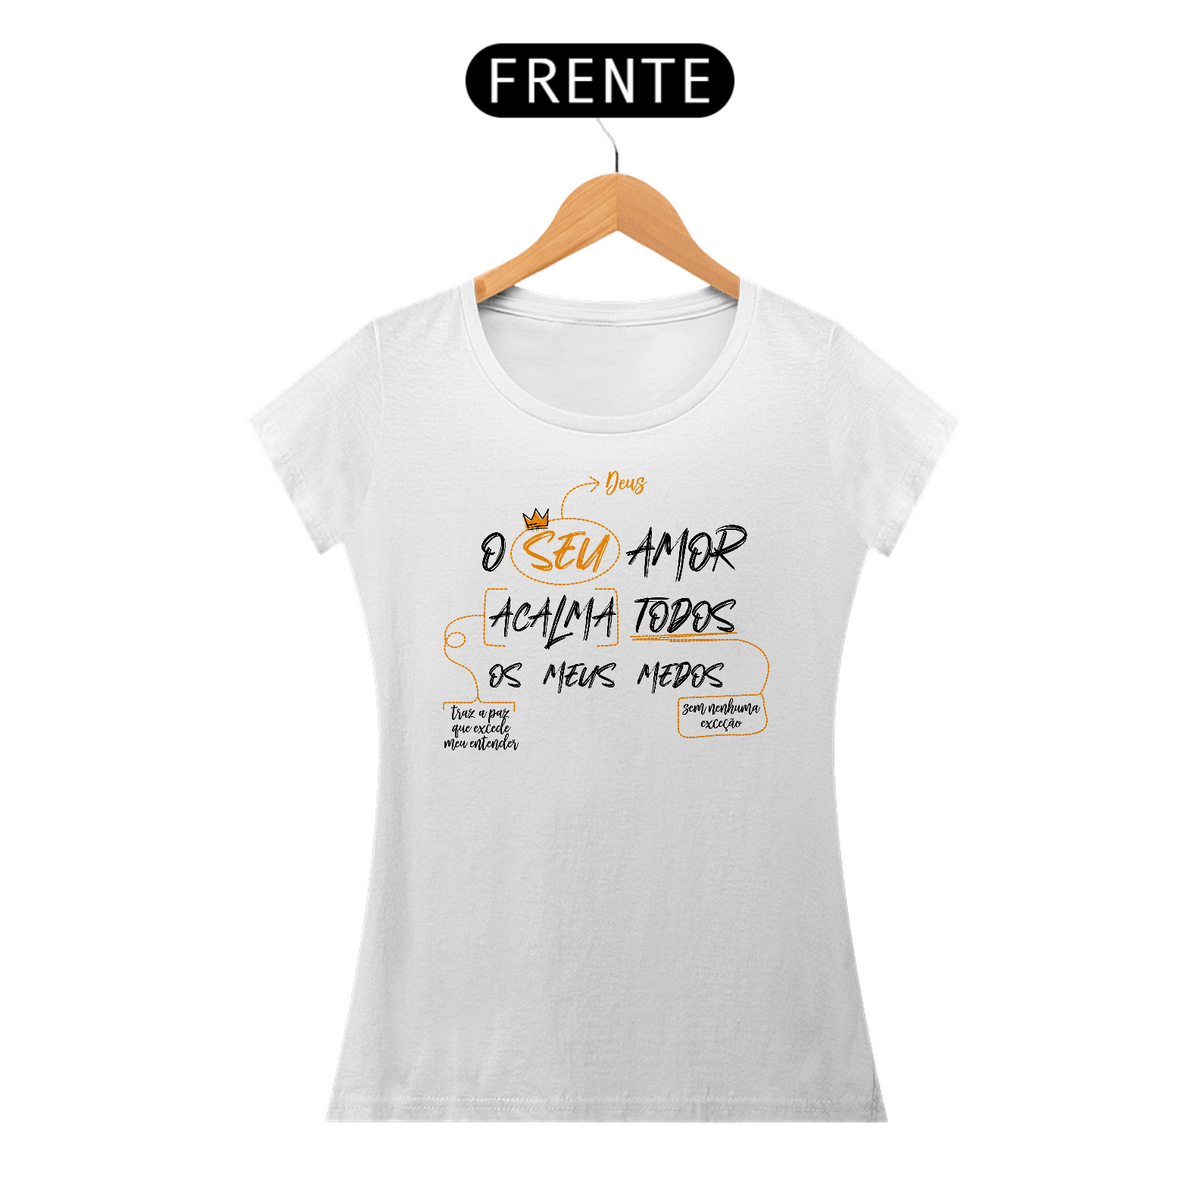 Nome do produto: Camiseta Amor que acalma - Feminina